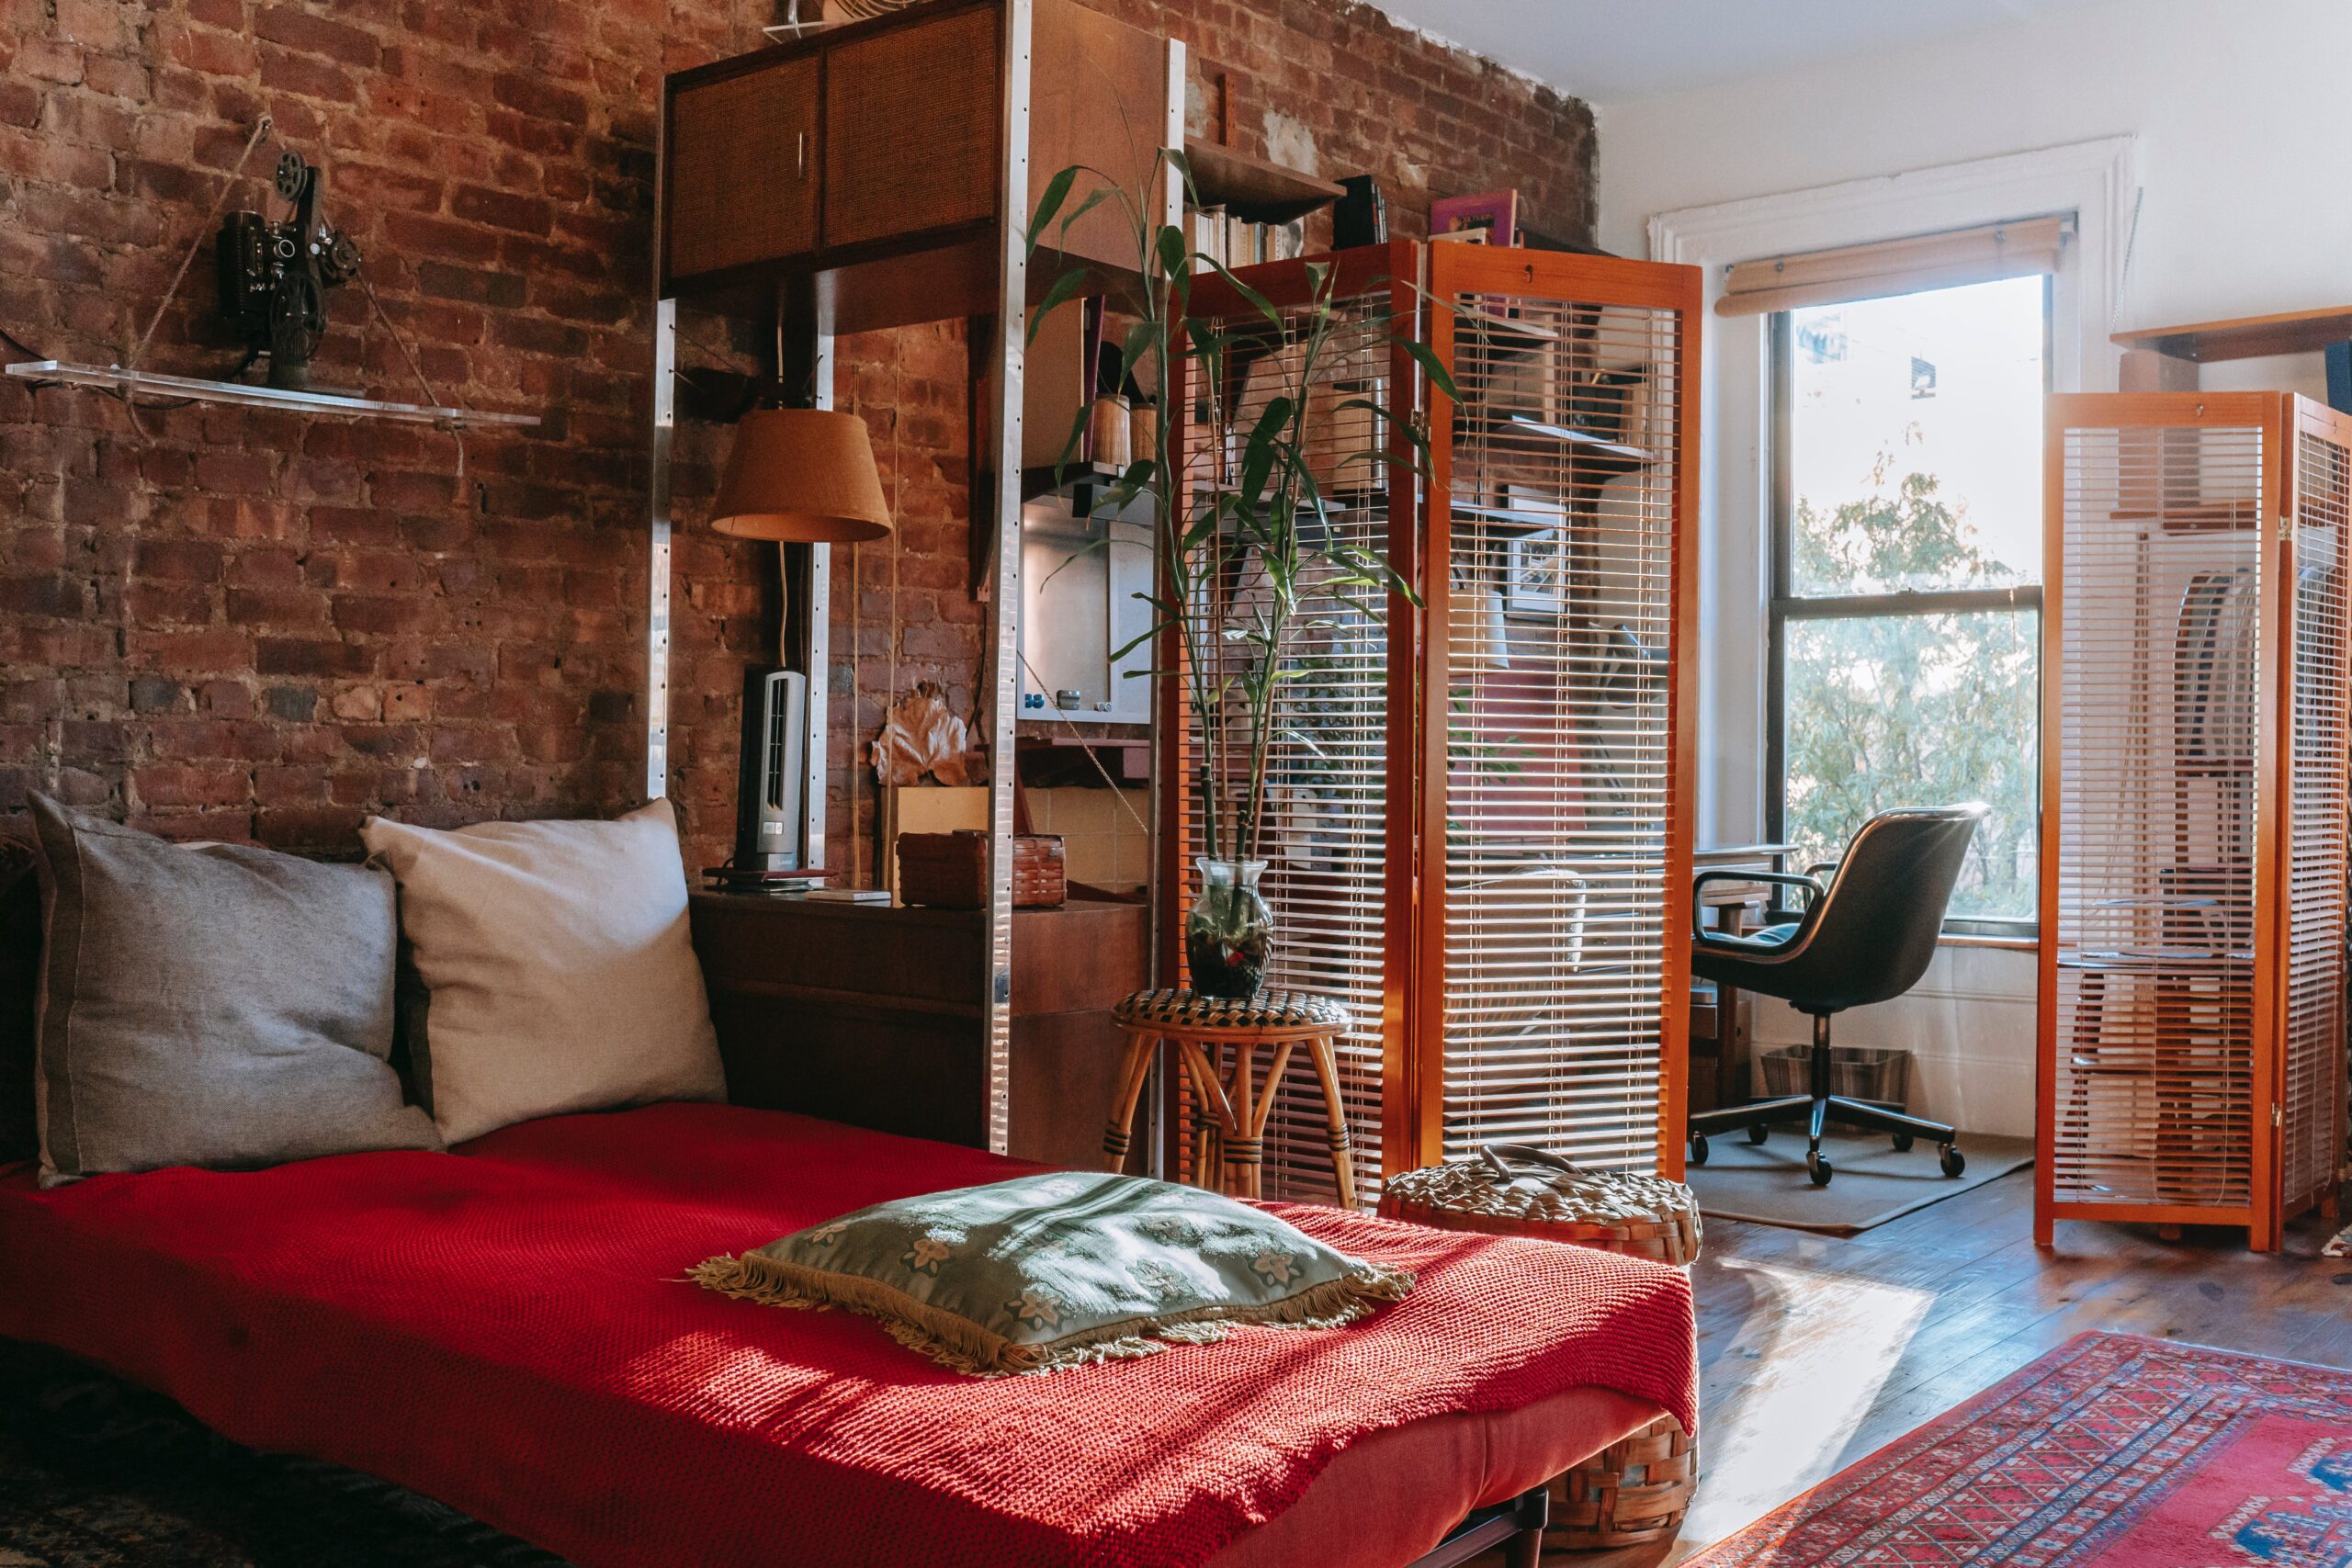 Łóżka loftowe - praktyczne i stylowe rozwiązanie do nowoczesnych mieszkań